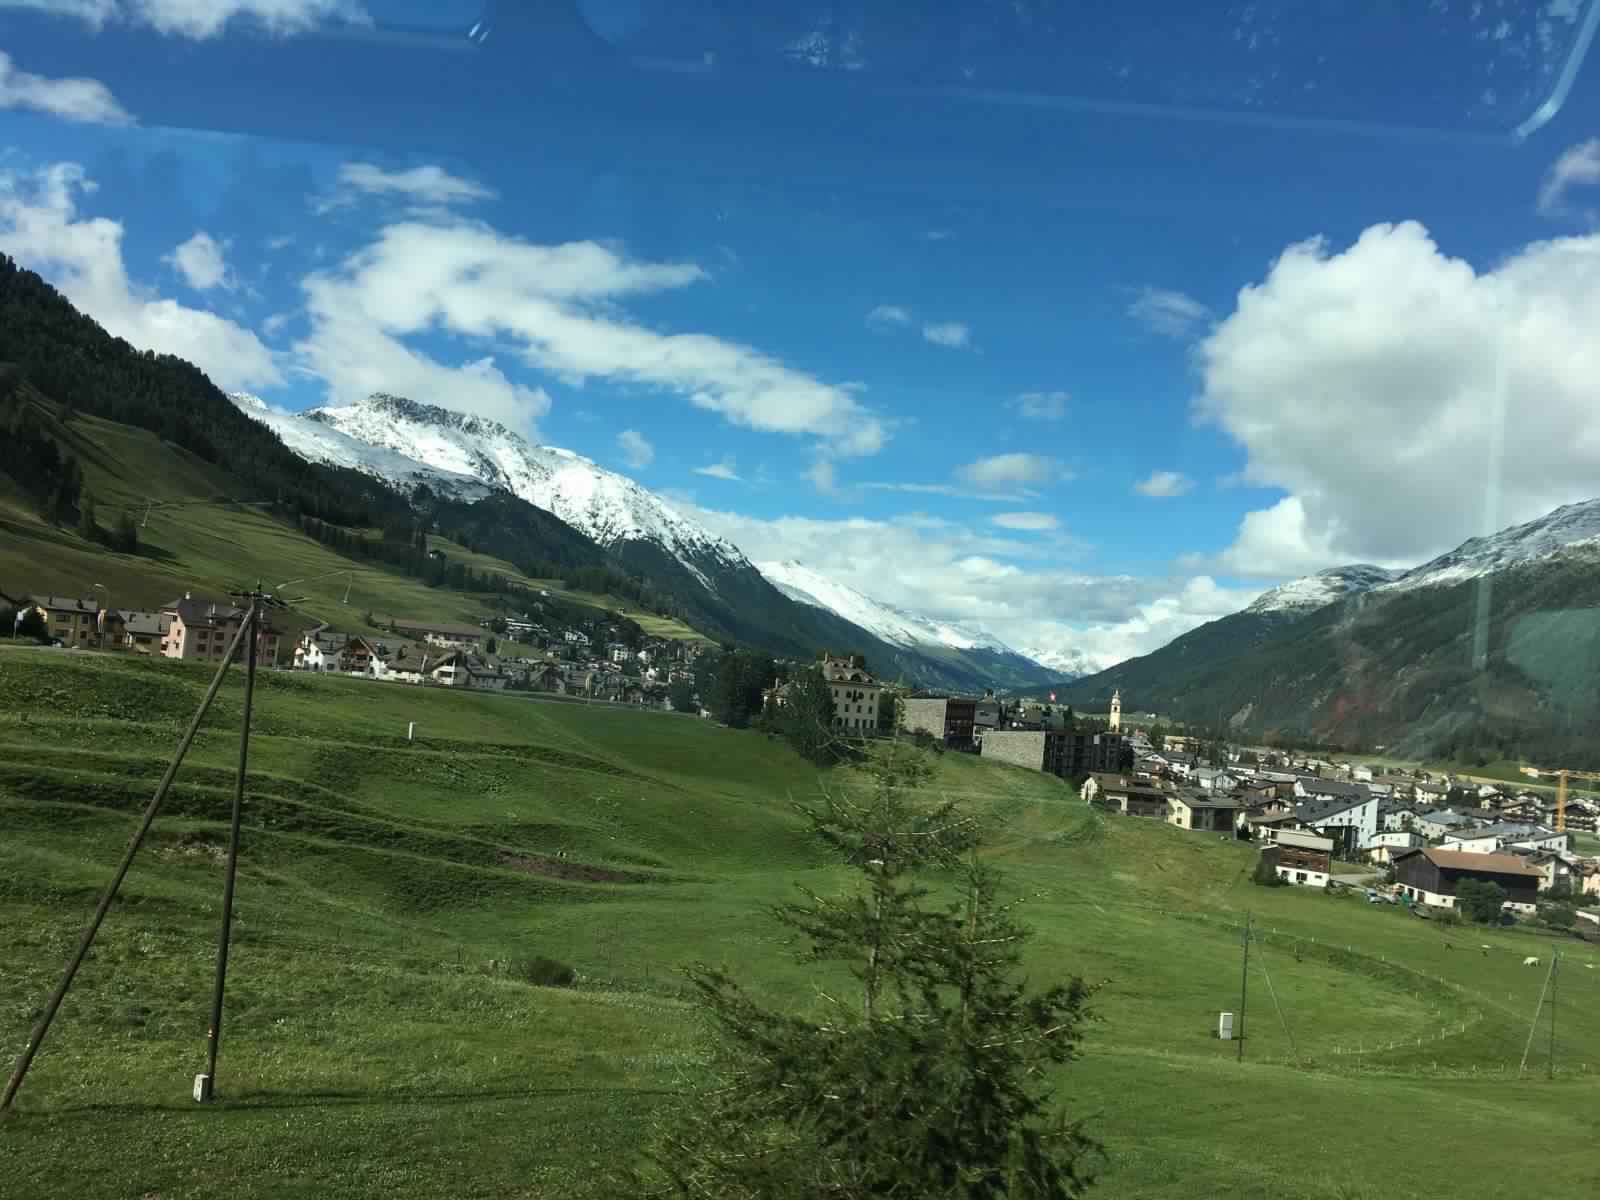 "بالصور" جولة مع قطار جلاسير إكسبريس عبر جبال اﻷلب السويسرية 37